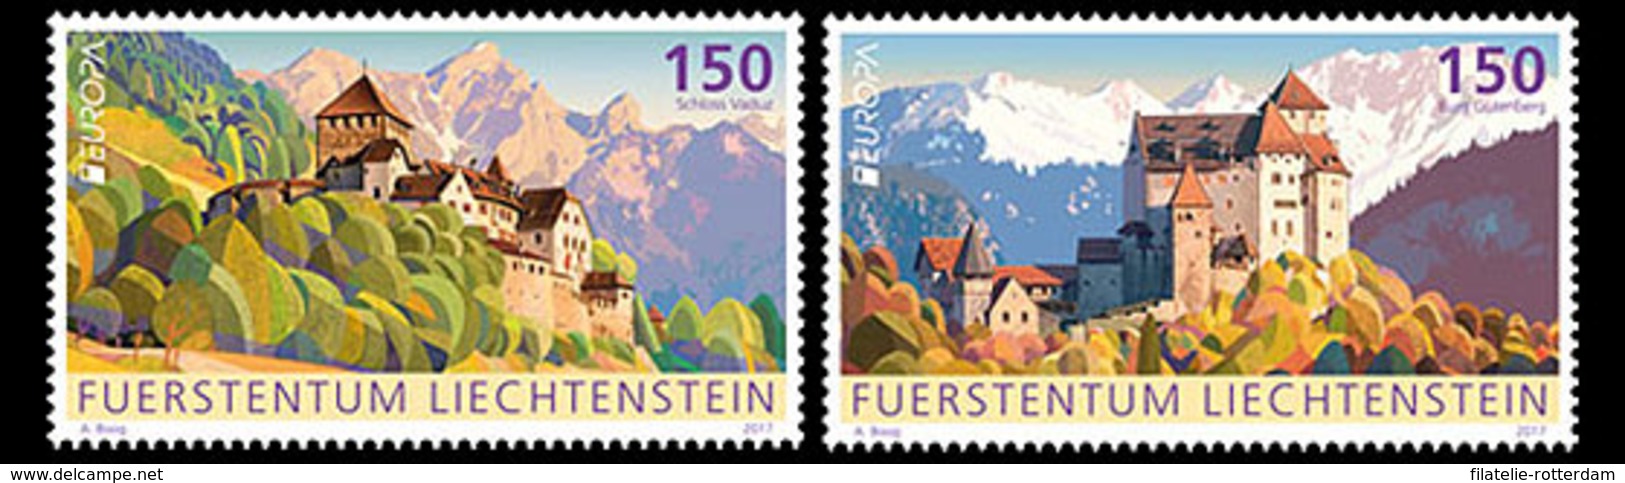 Liechtenstein - Postfris / MNH - Complete Set Europa, Kastelen 2017 - Ungebraucht